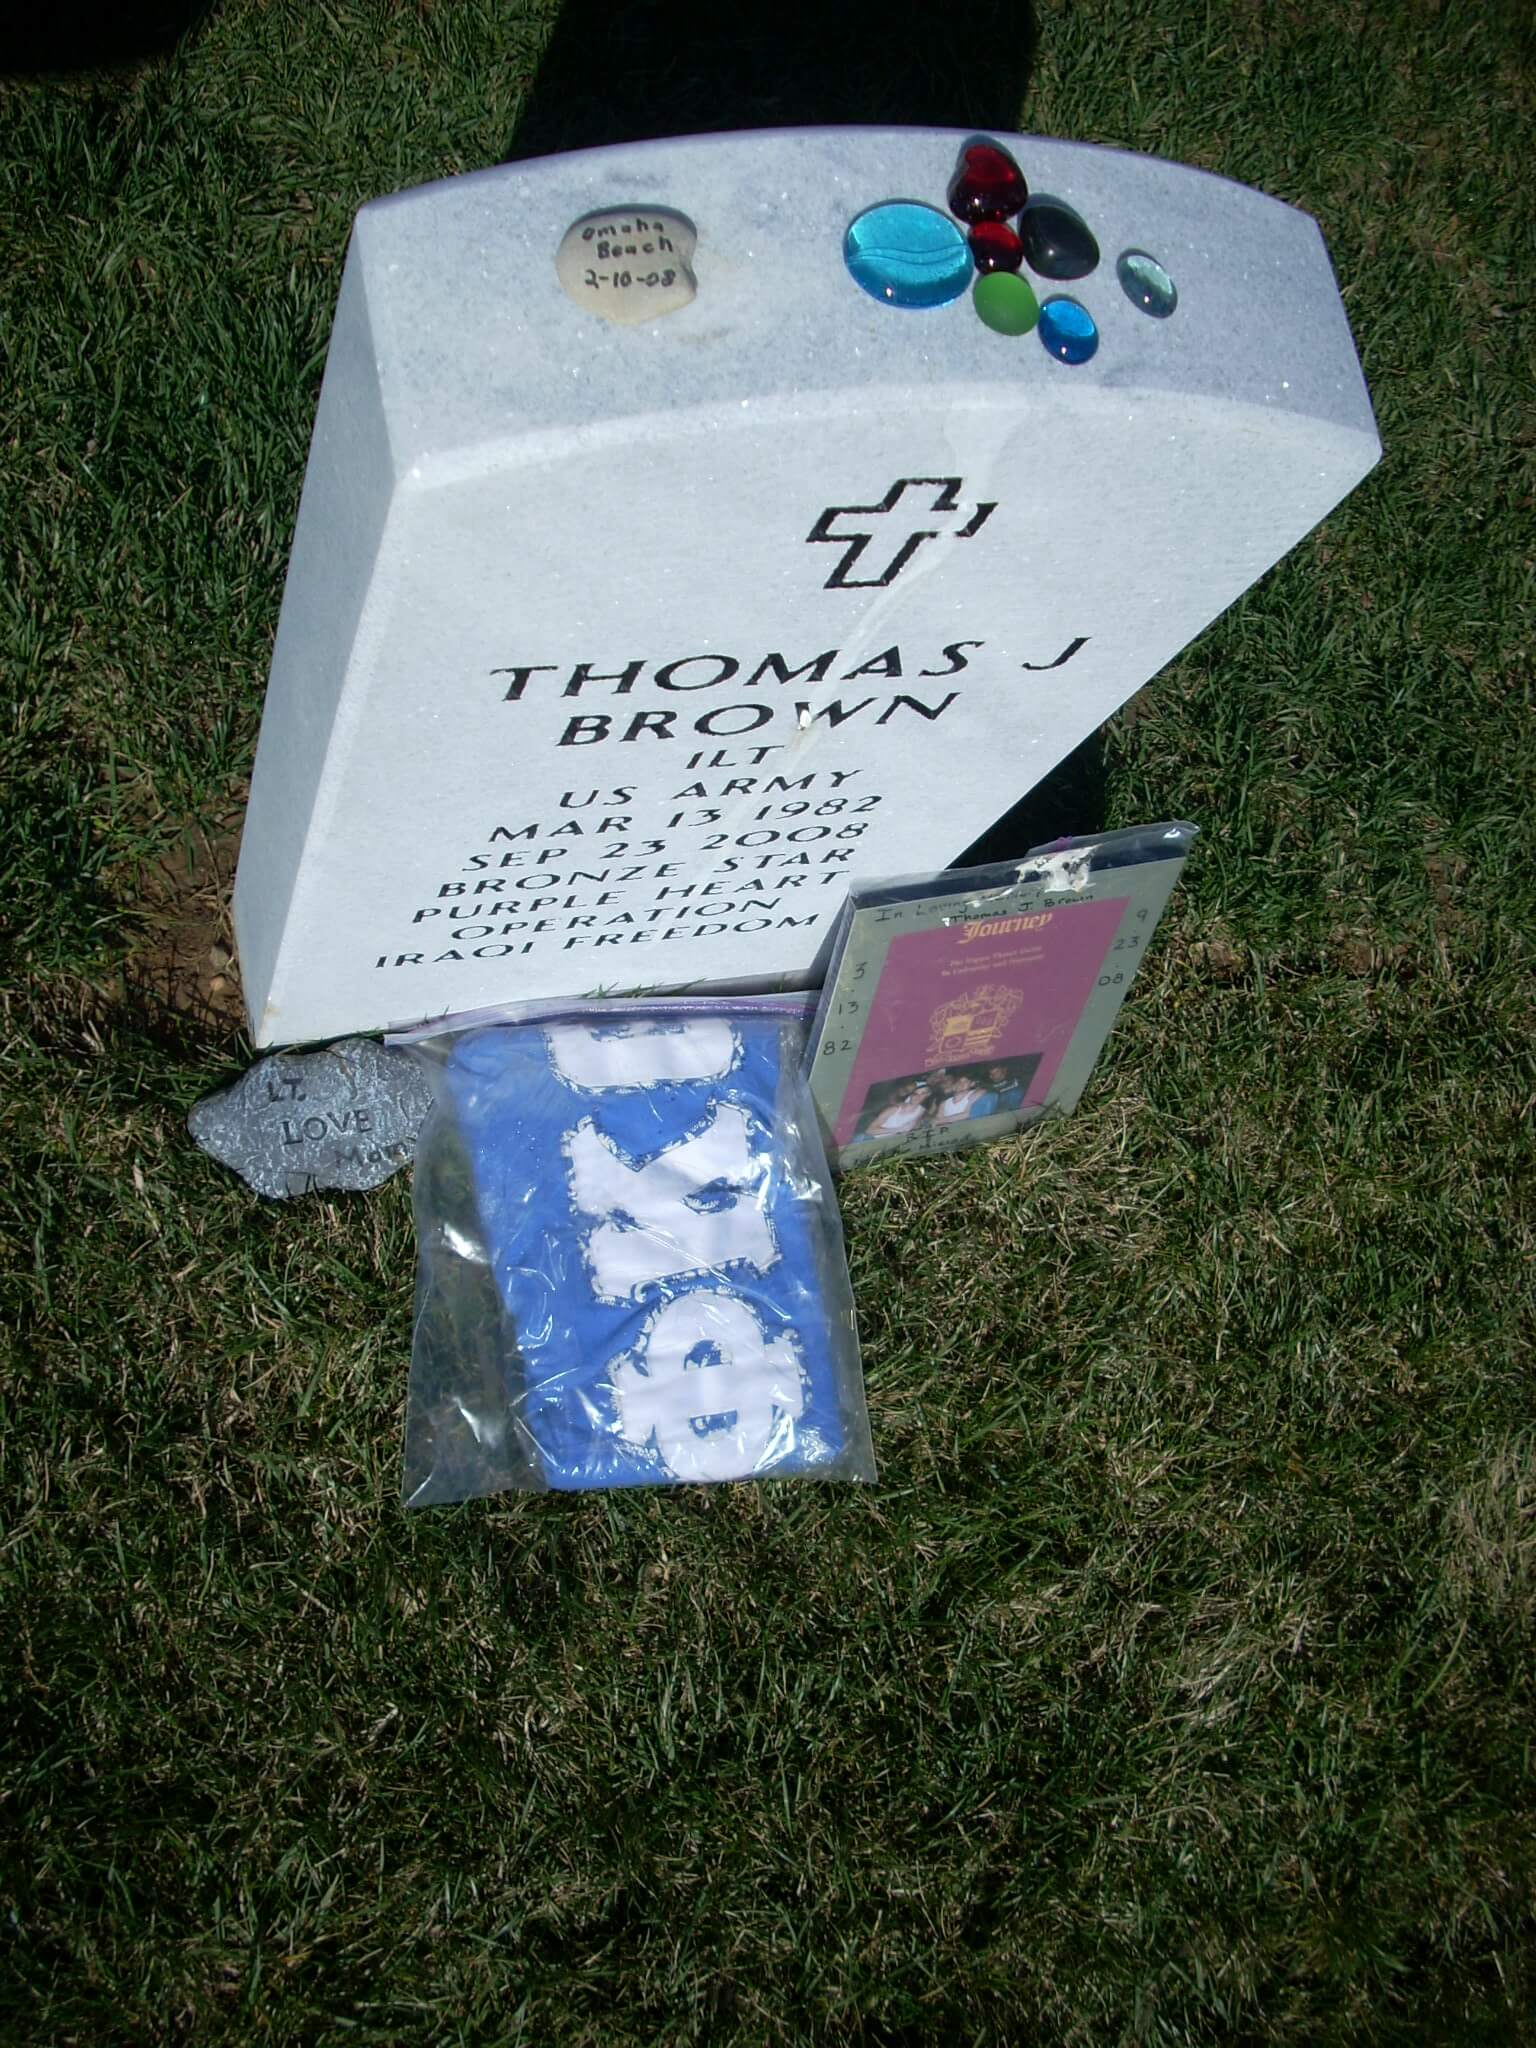 tjbrown-gravesite-photo-april-2009-002